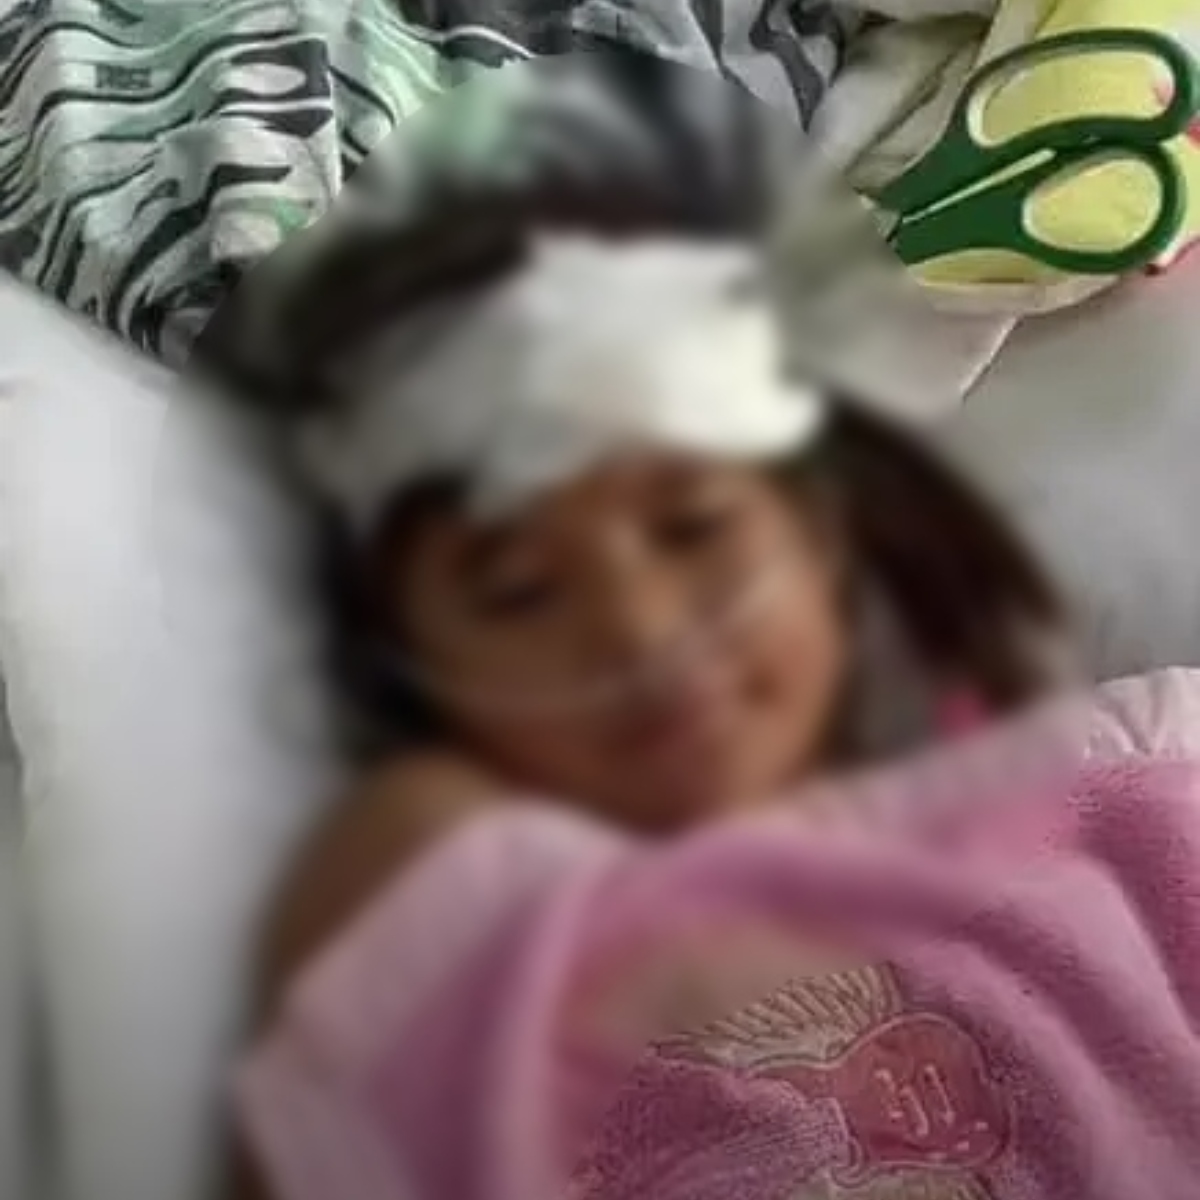  Criança finca tesoura na cabeça da irmã de 9 anos durante briga 